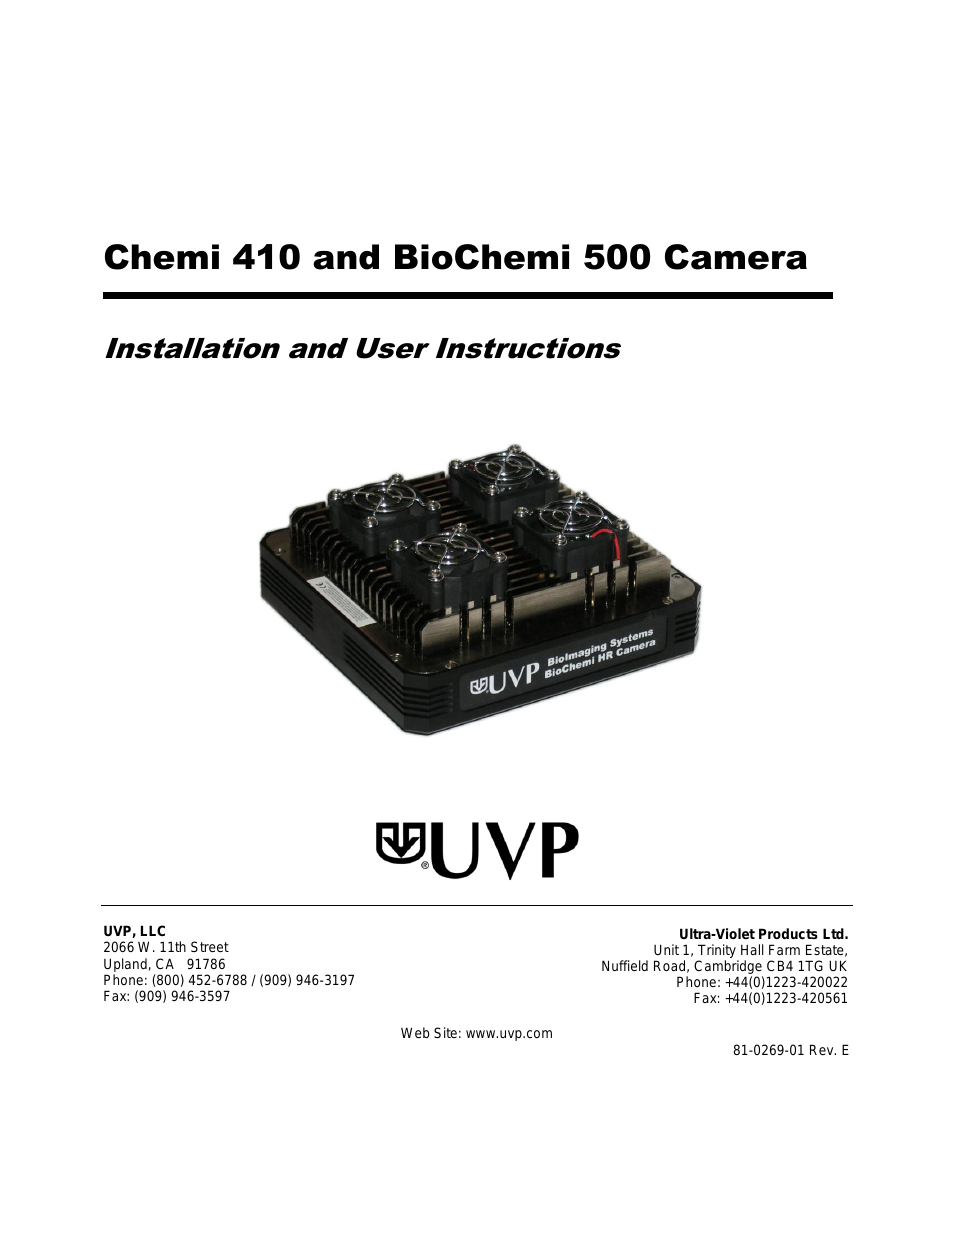 81-0269-01  CCD Cameras: Chemi 410